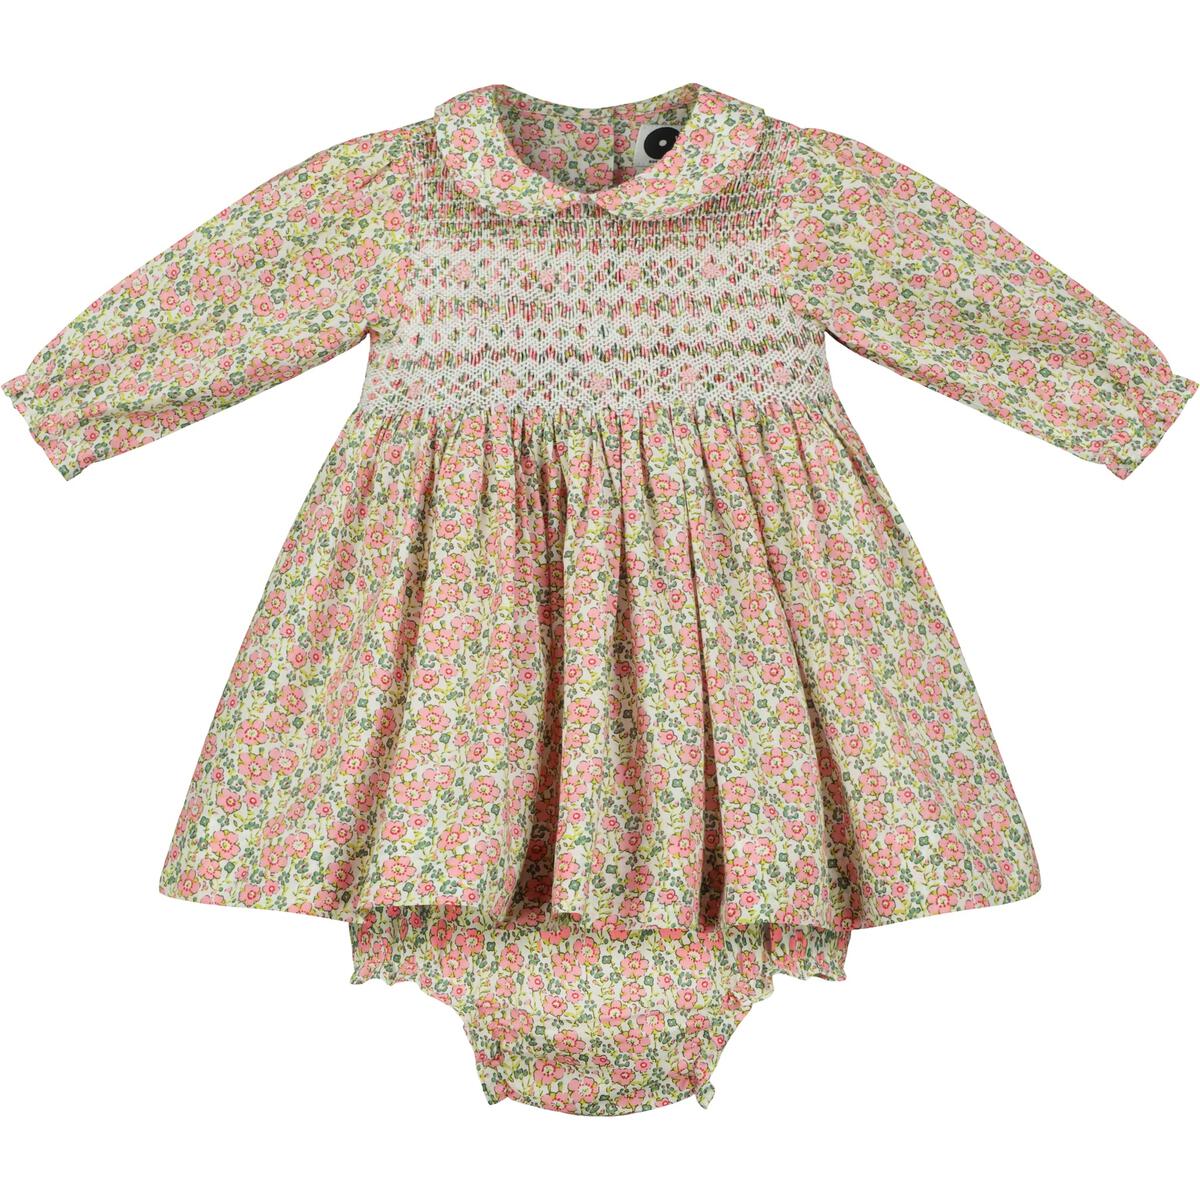 Kew Dress (LS Peach/Green Floral w Collar)